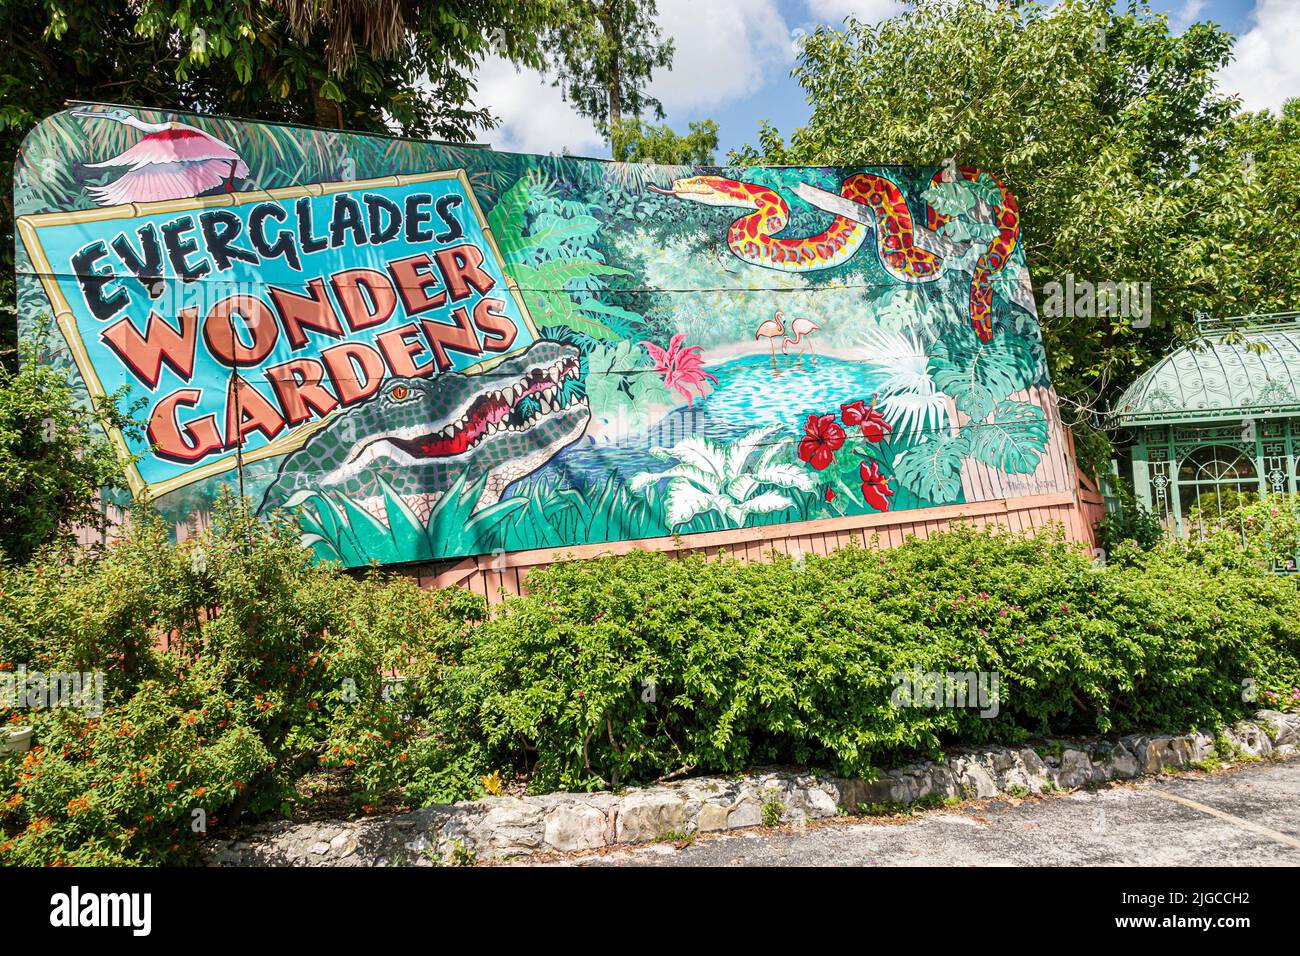 Bonita Springs Florida, Everglades Wonder Gardens, botanischer Garten Refugium verletzte Wildtiere Ausstellungen Touristenattraktion Eingangsschild Stockfoto